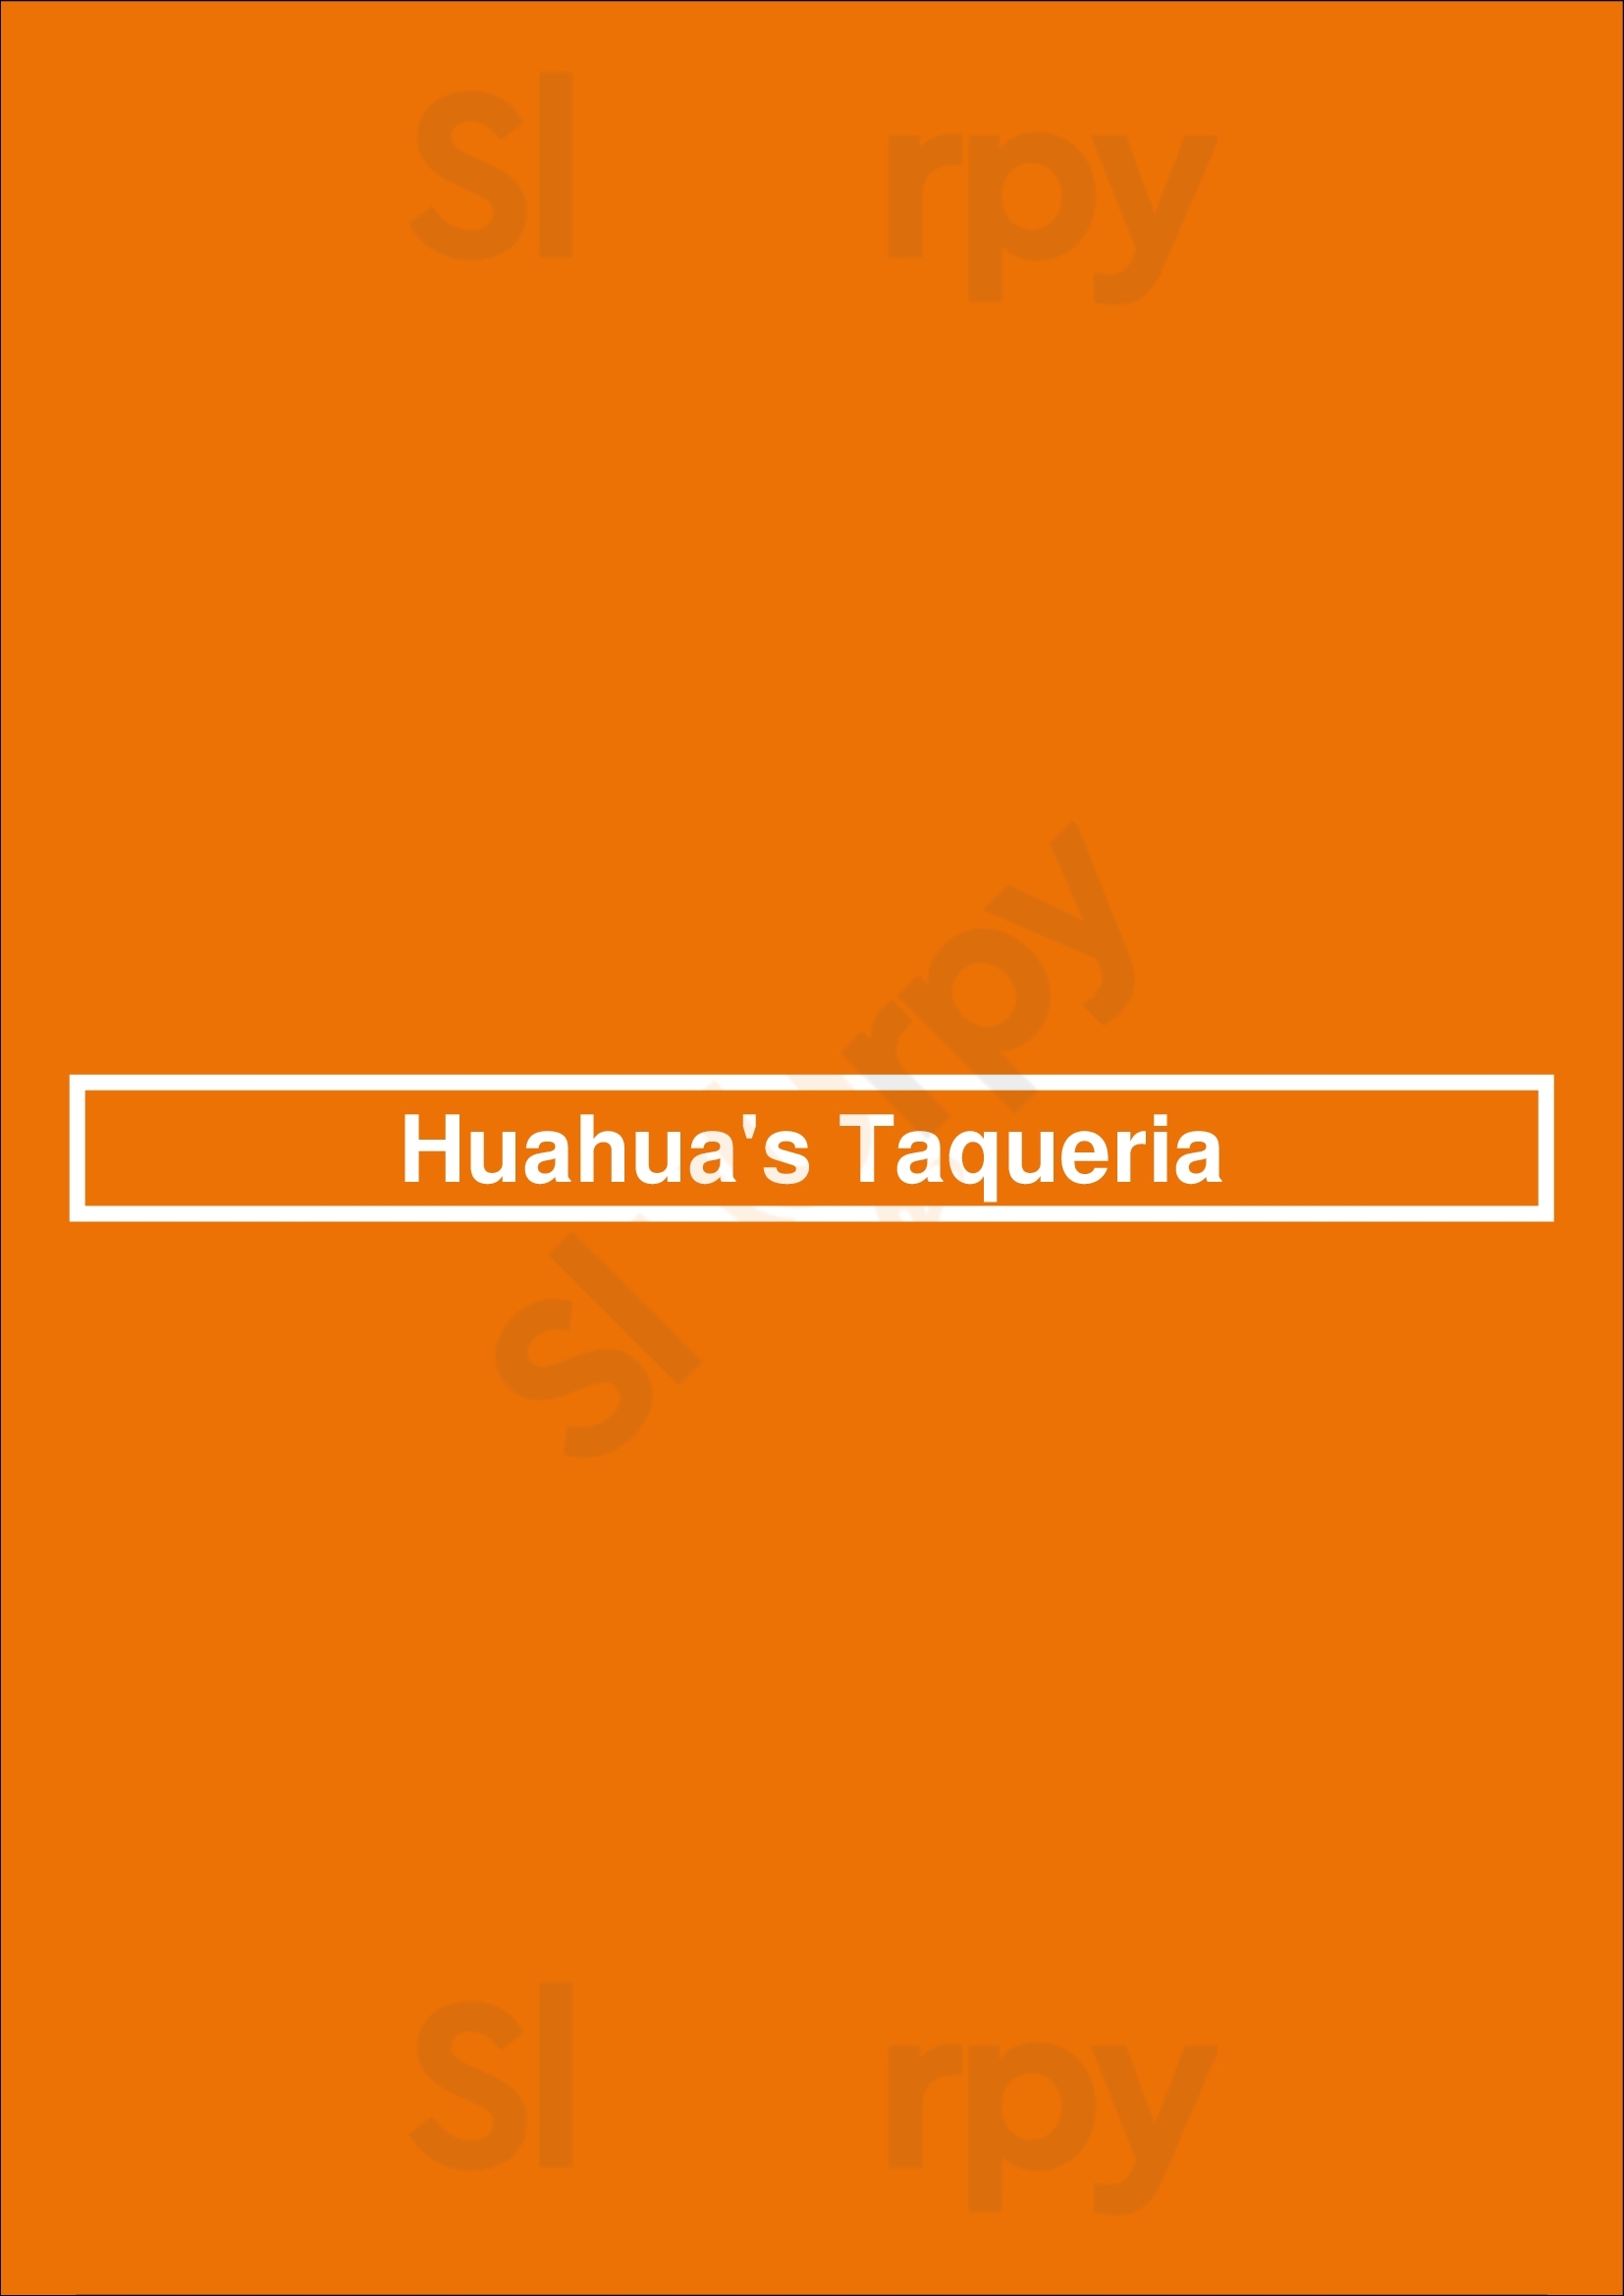 Huahua's Taqueria Miami Beach Menu - 1